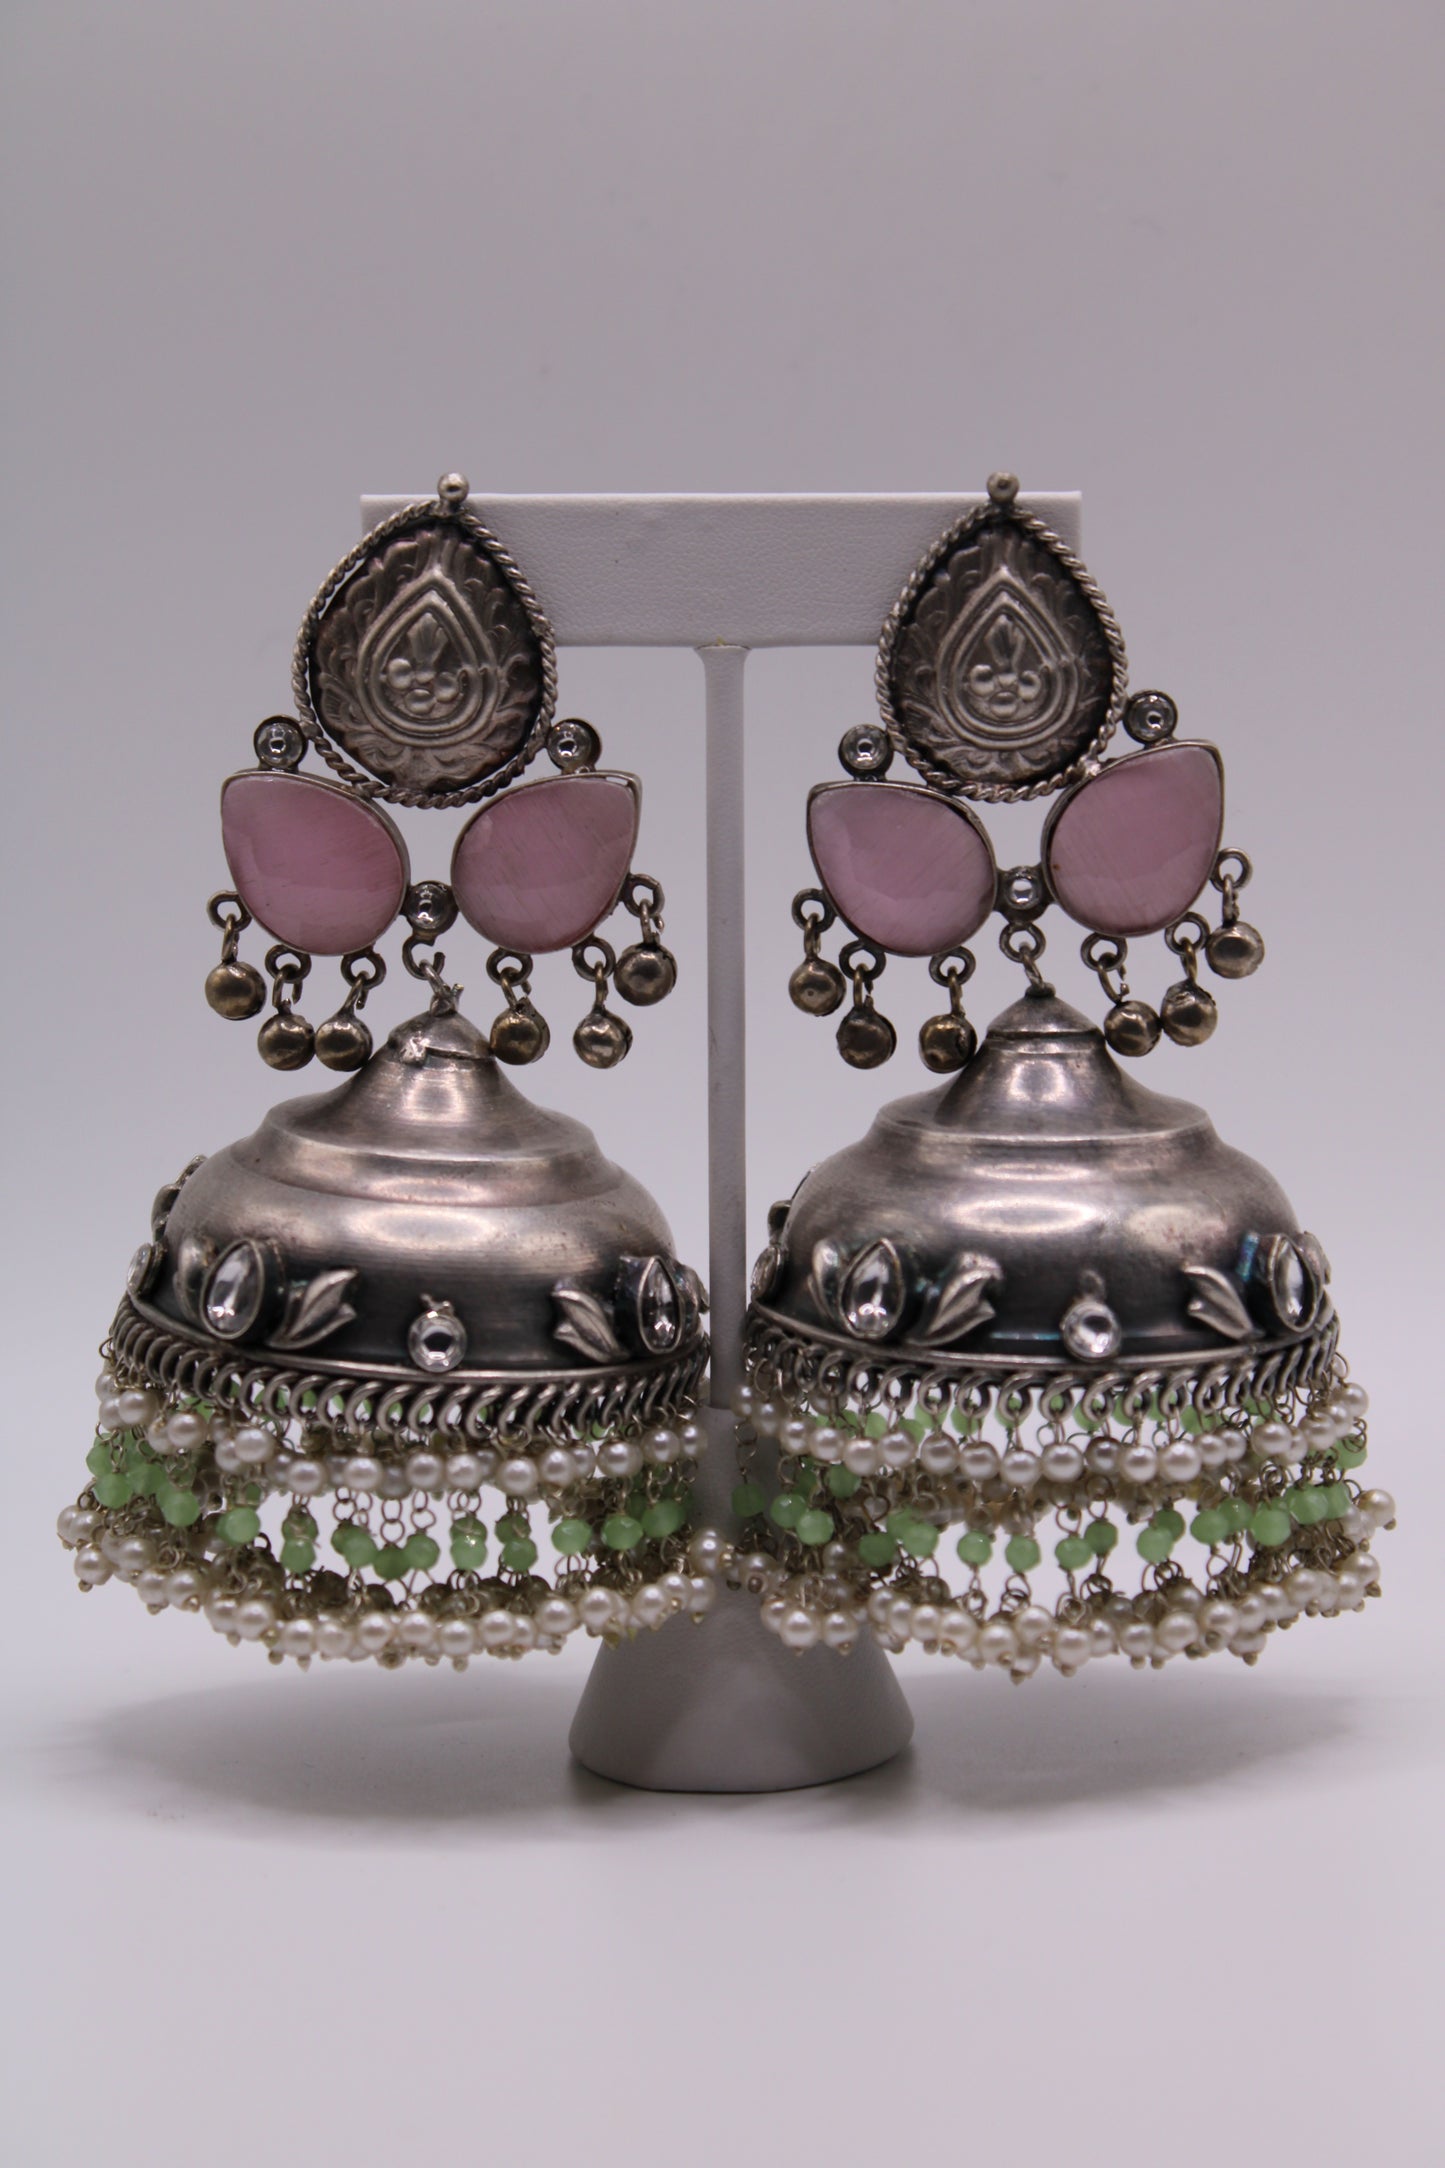 Amina earrings